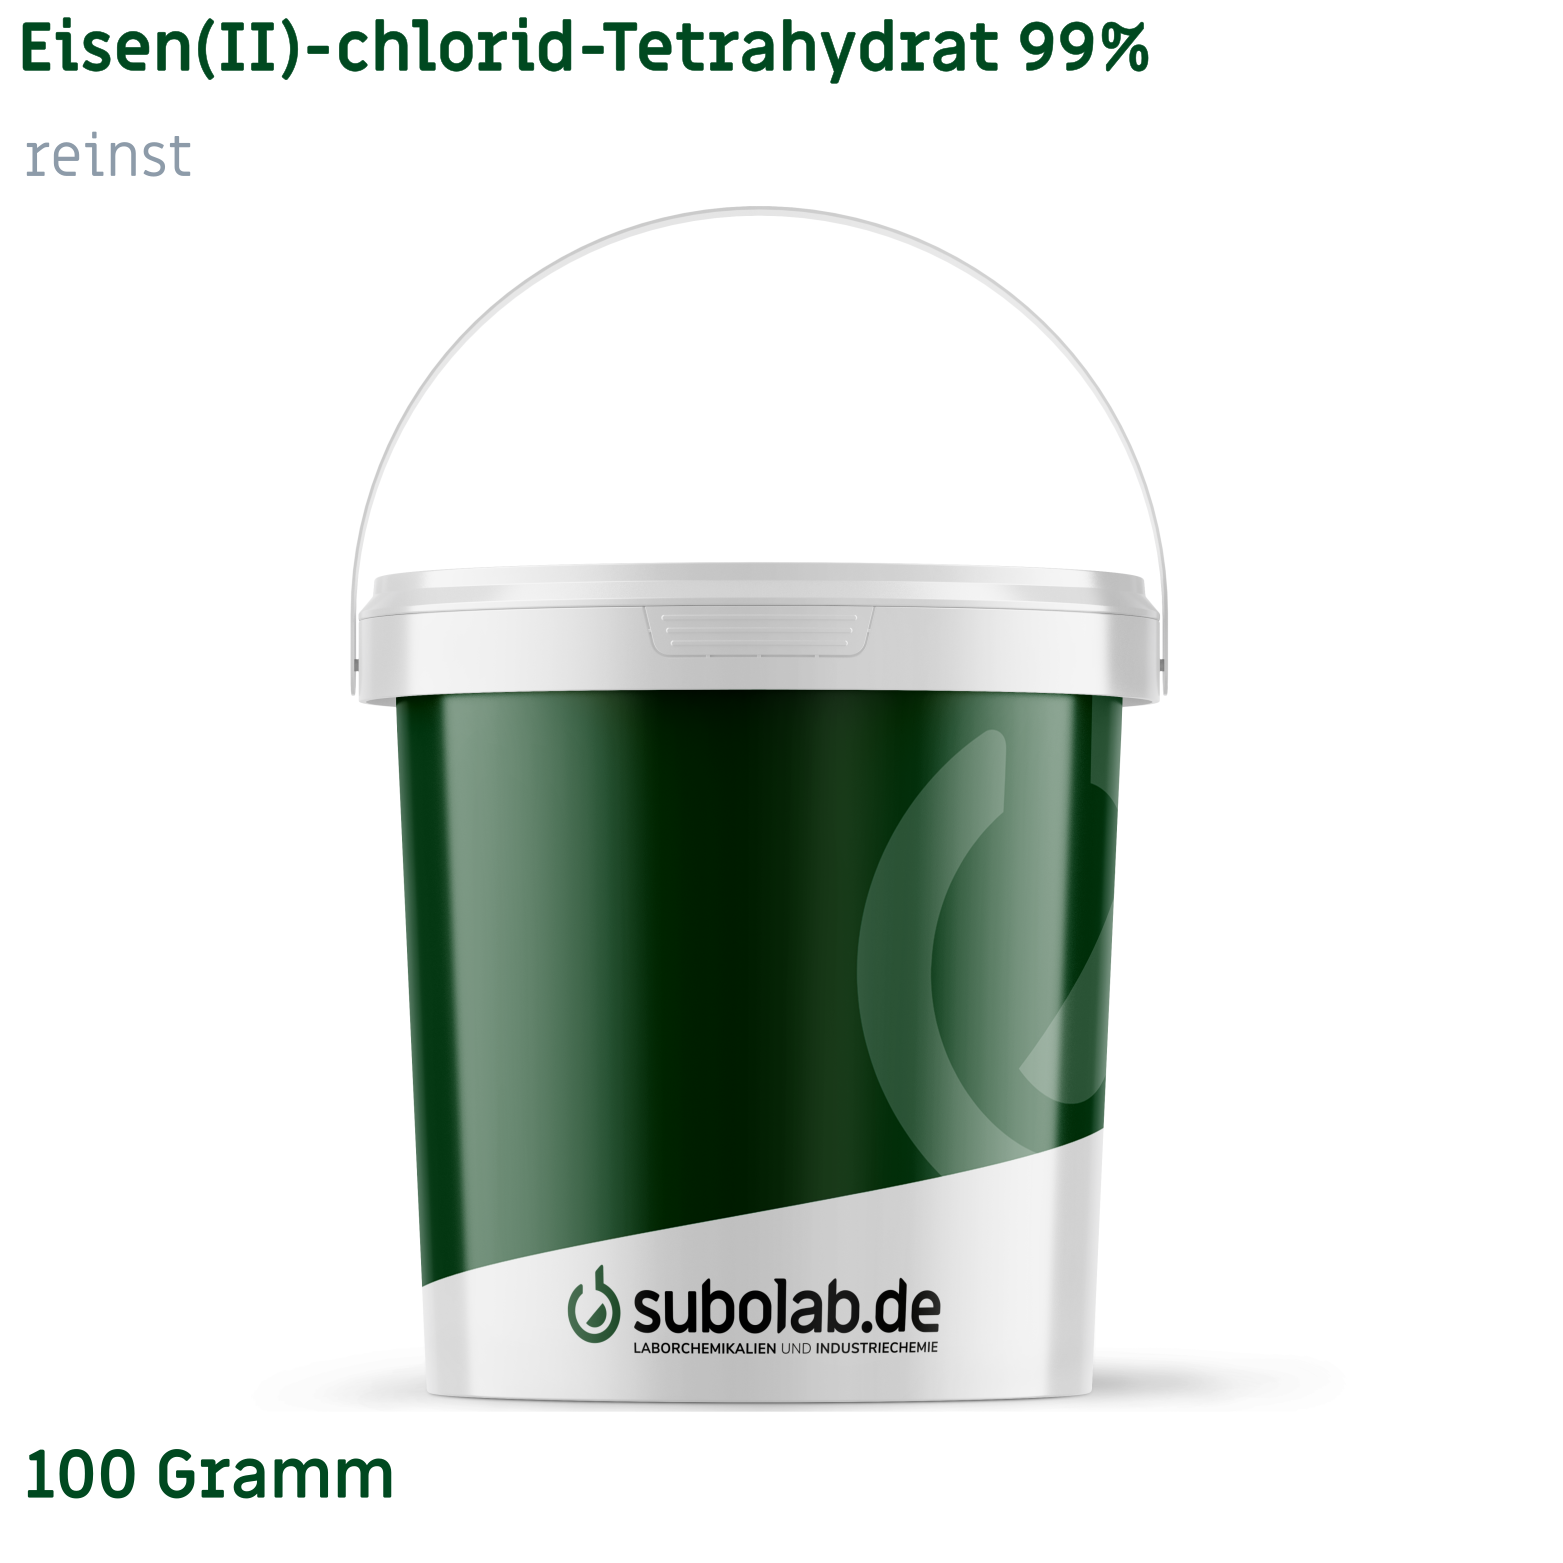 Bild von Eisen(II)-chlorid - Tetrahydrat 99% reinst (100 Gramm)